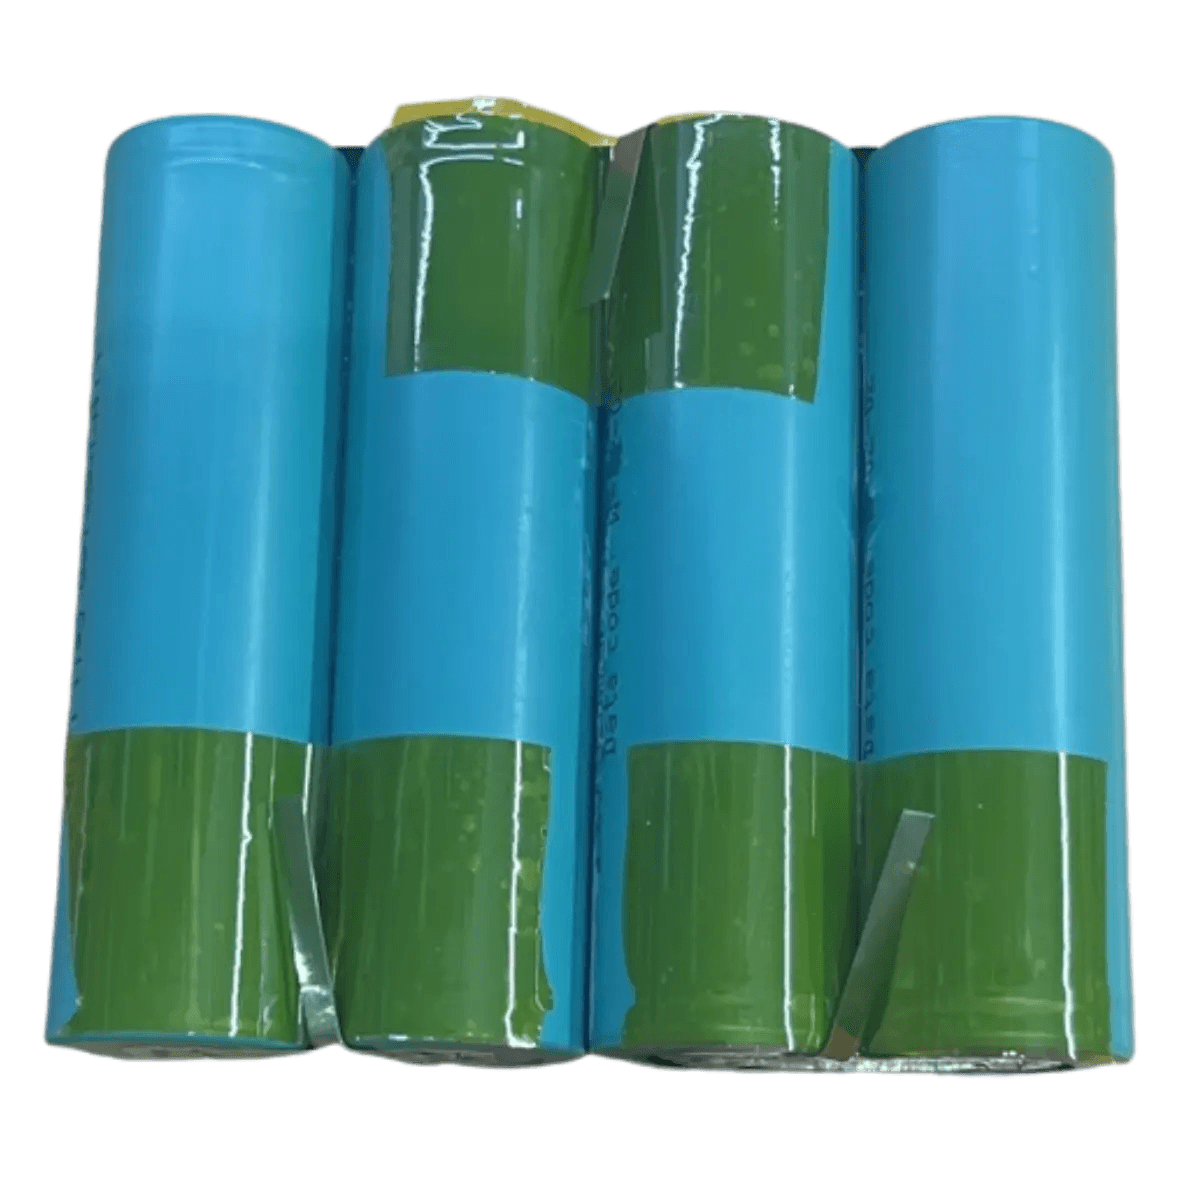 Batterie 2S2P - 7.4V - 6.4Ah - 4x18650